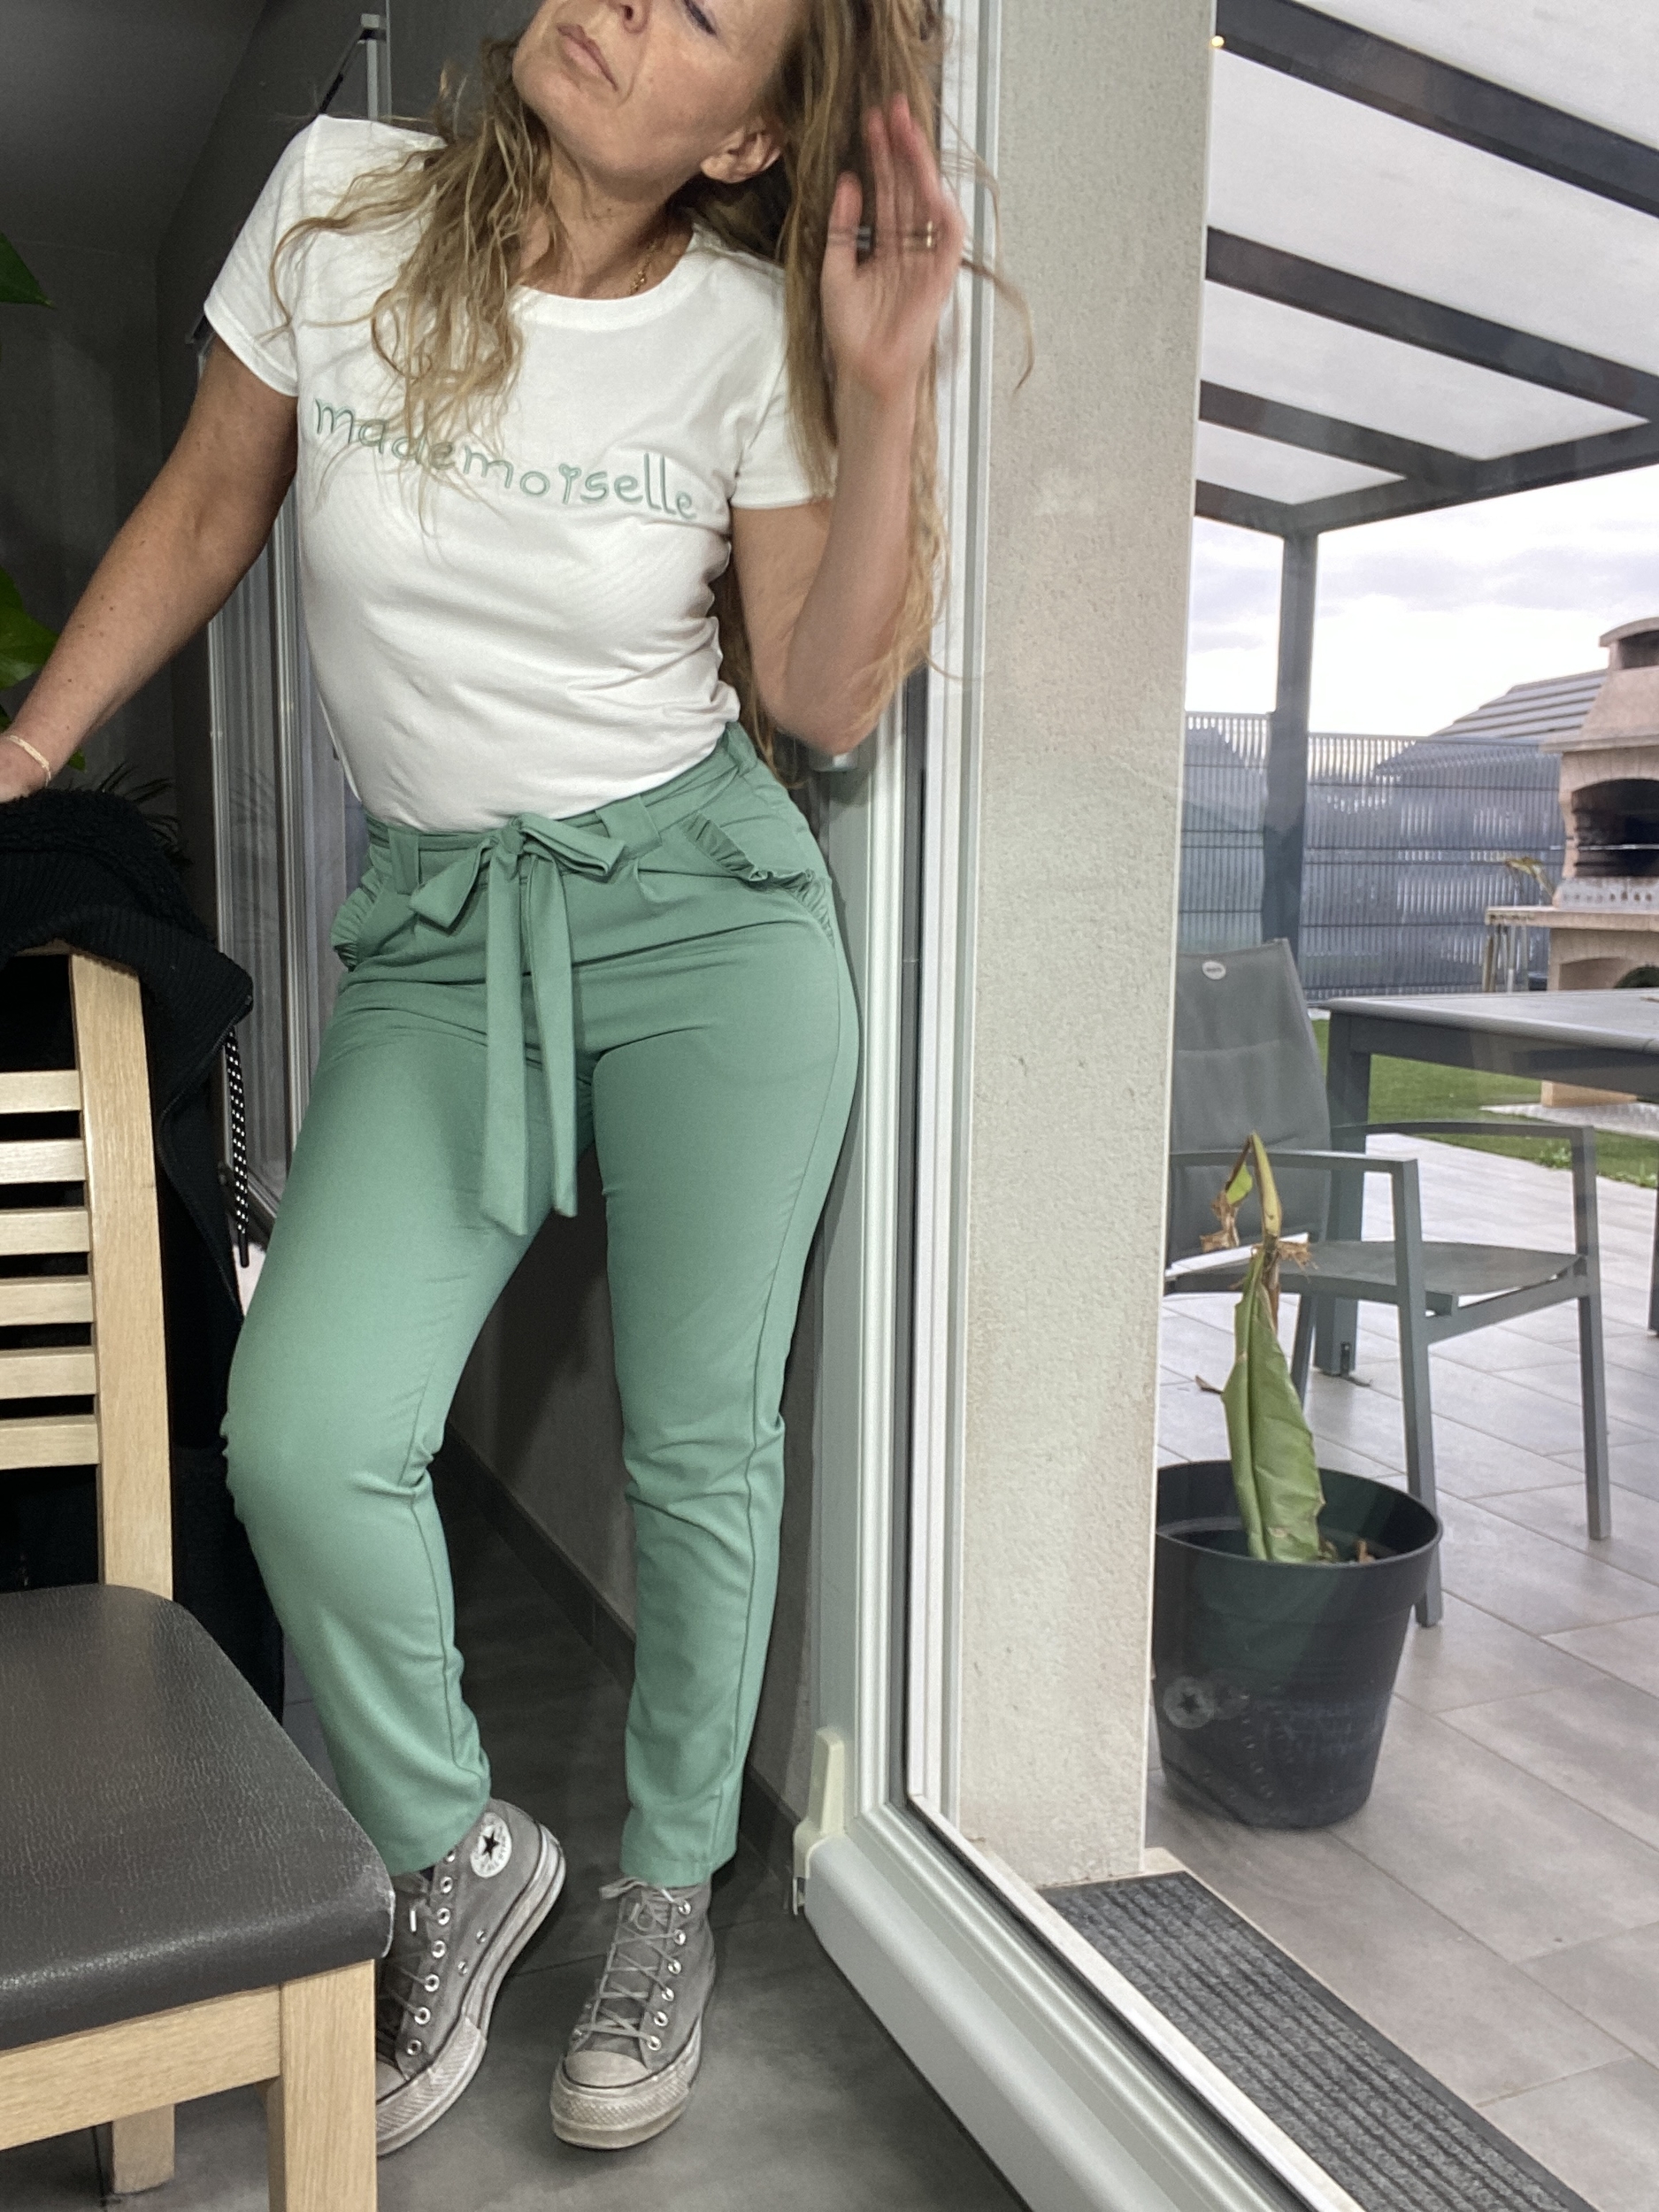 pantalon vert celadon